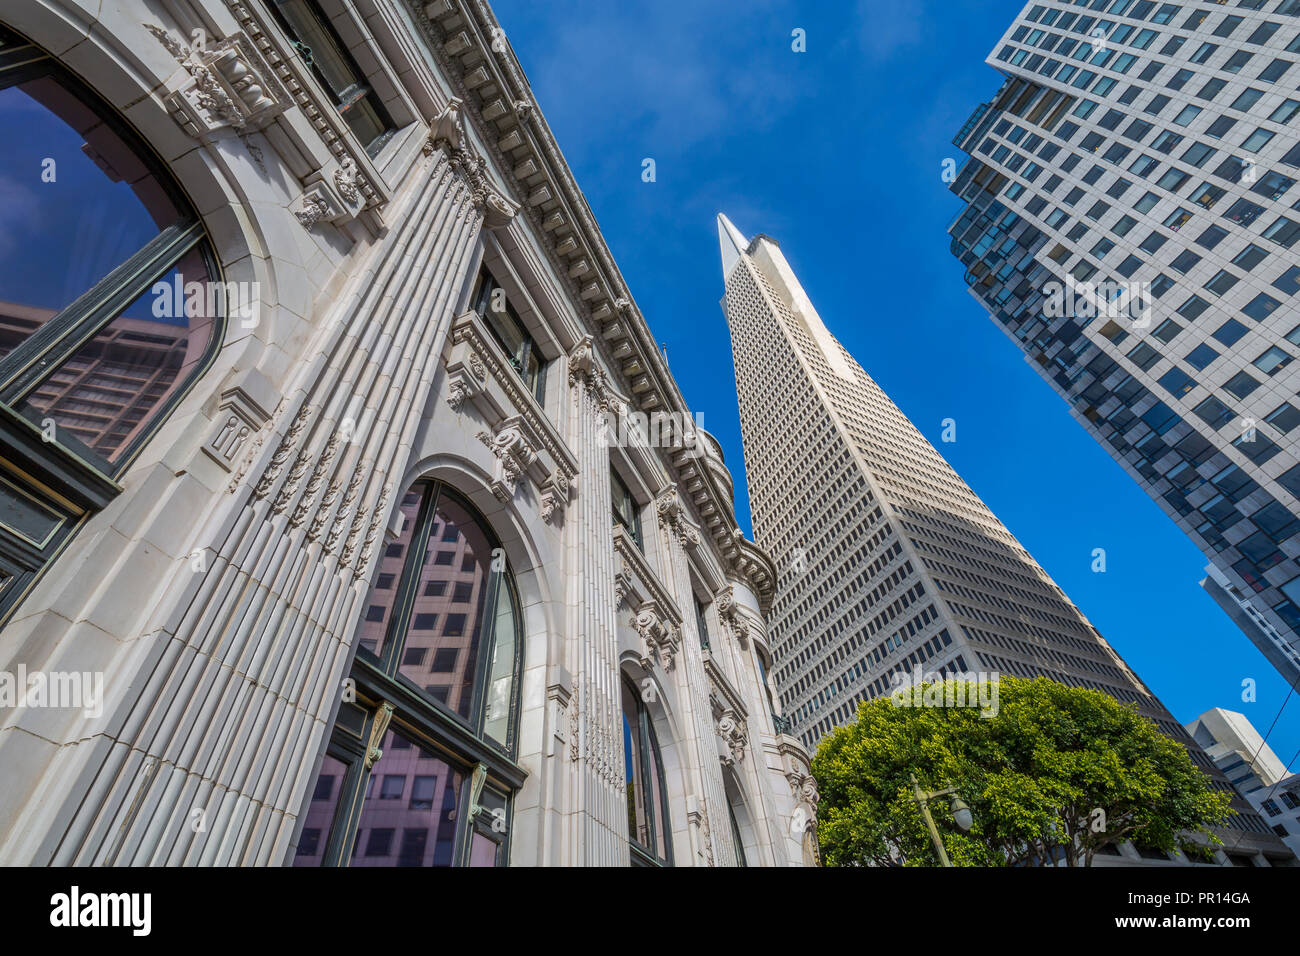 Ansicht der Transamerica Pyramid Gebäude im Finanzdistrikt von Downtown, San Francisco, Kalifornien, Vereinigte Staaten von Amerika, Nordamerika Stockfoto